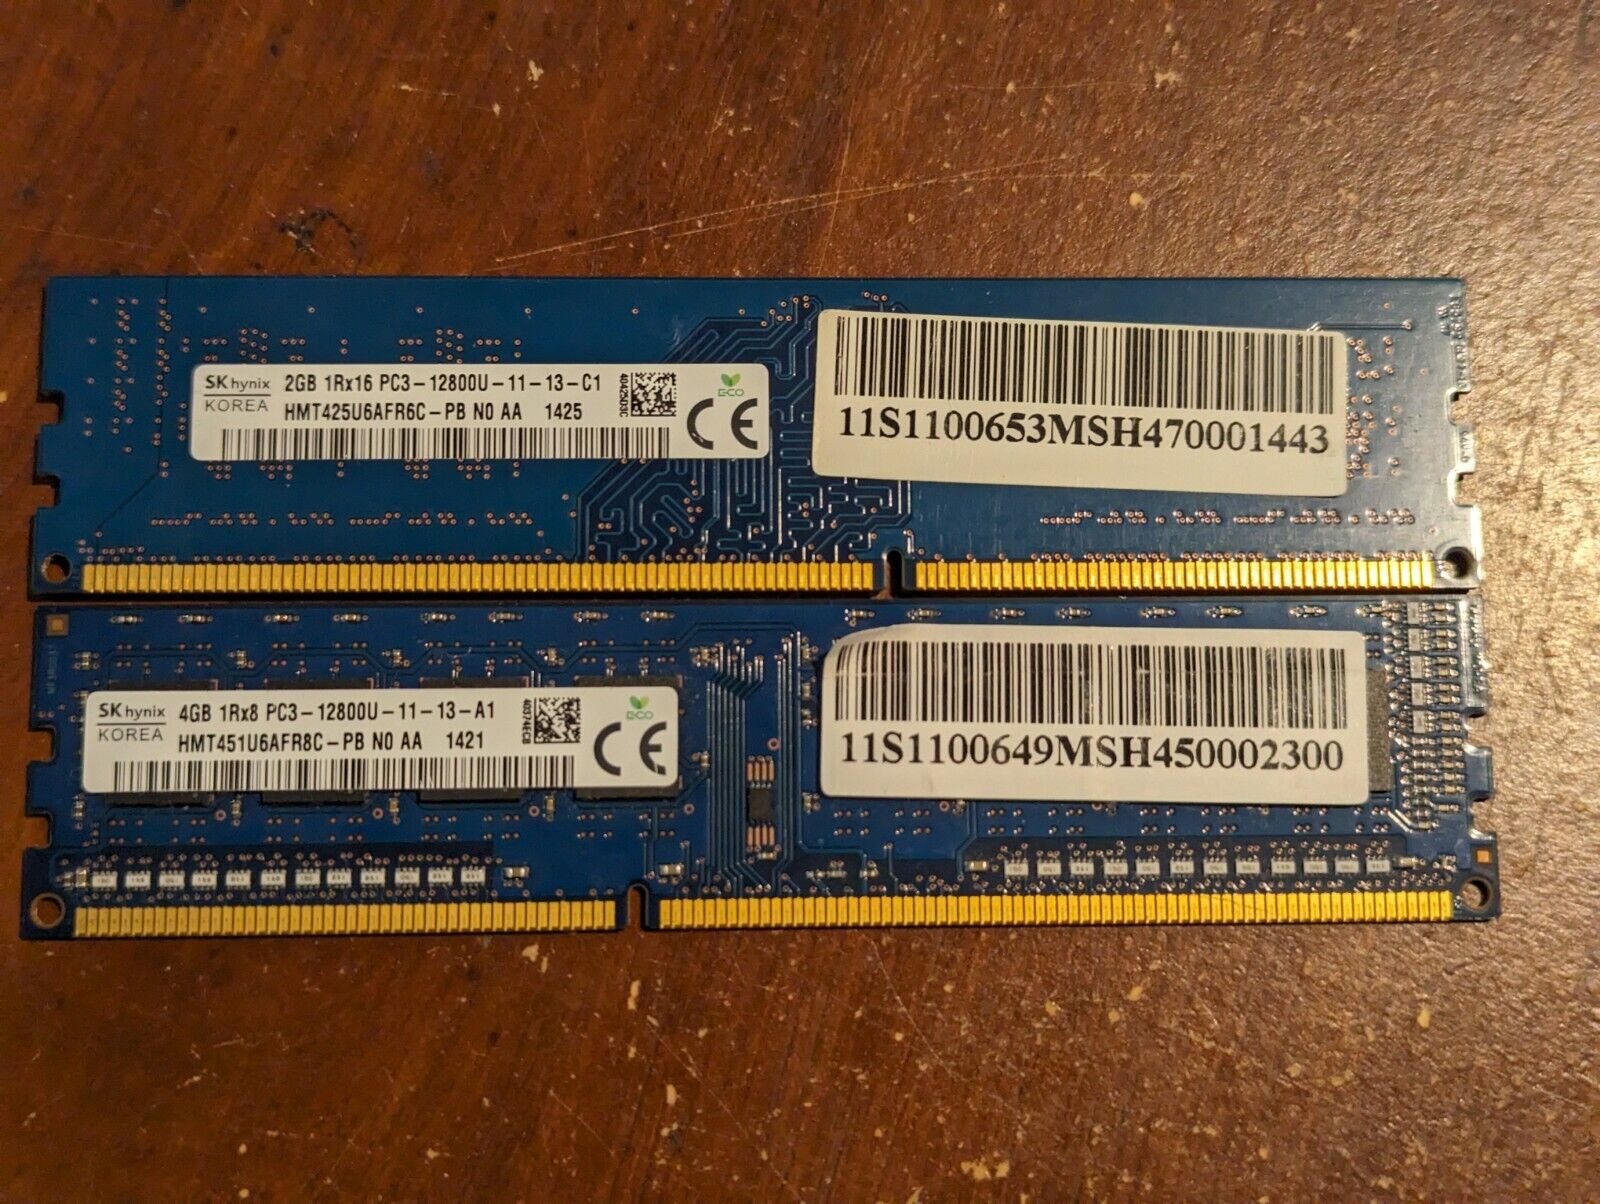 Hynix 6GB DDR3 12800U PC RAM DIMM Memory (1 x 4GB, 1 x 2GB)